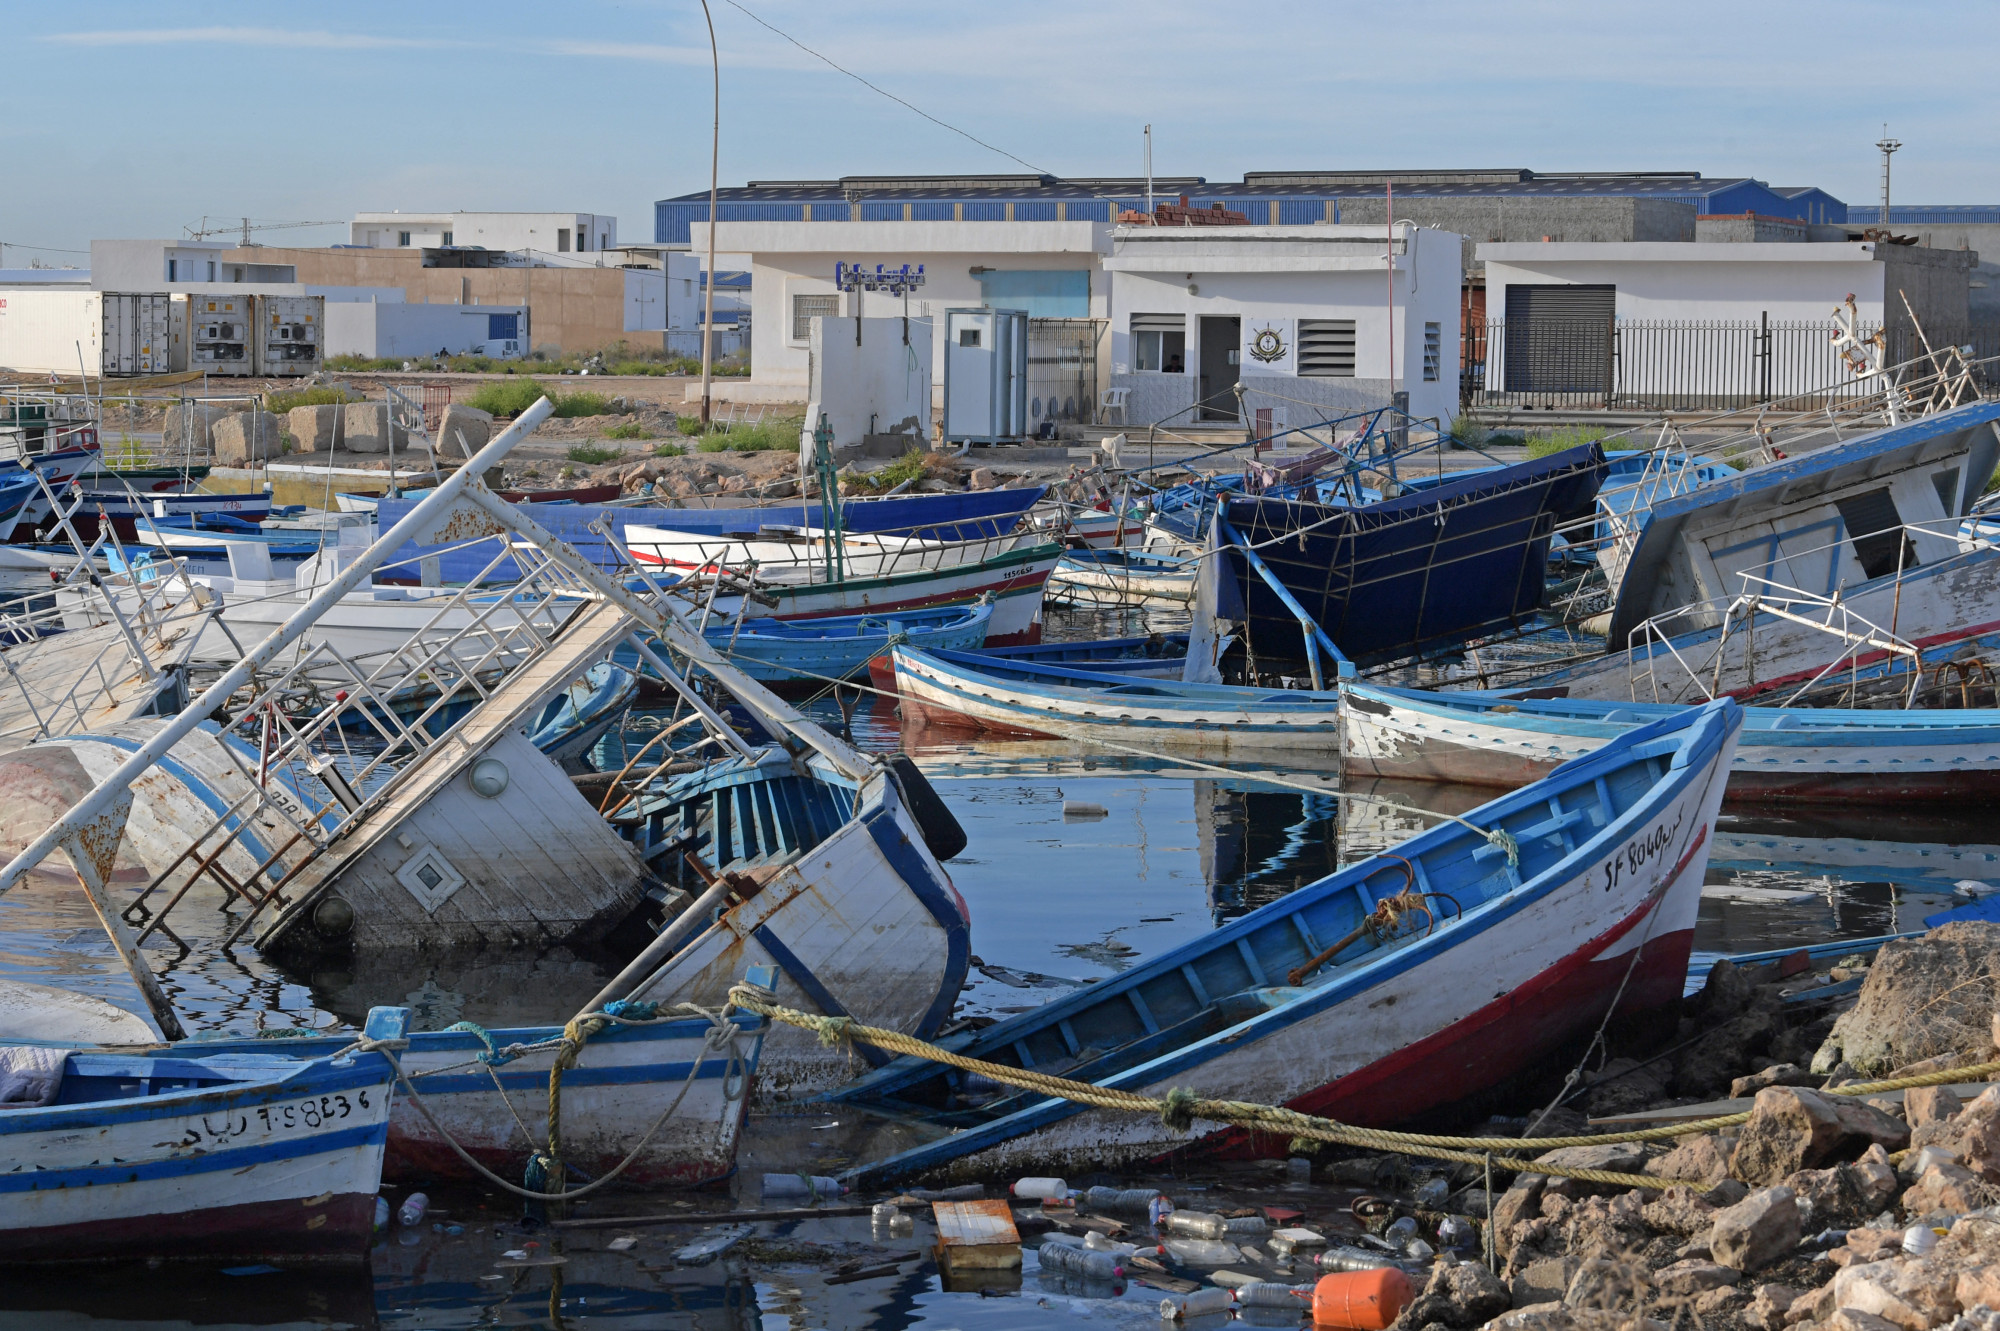 Olaszországba próbáltak eljutni, 29-en meghaltak Tunézia partjainál